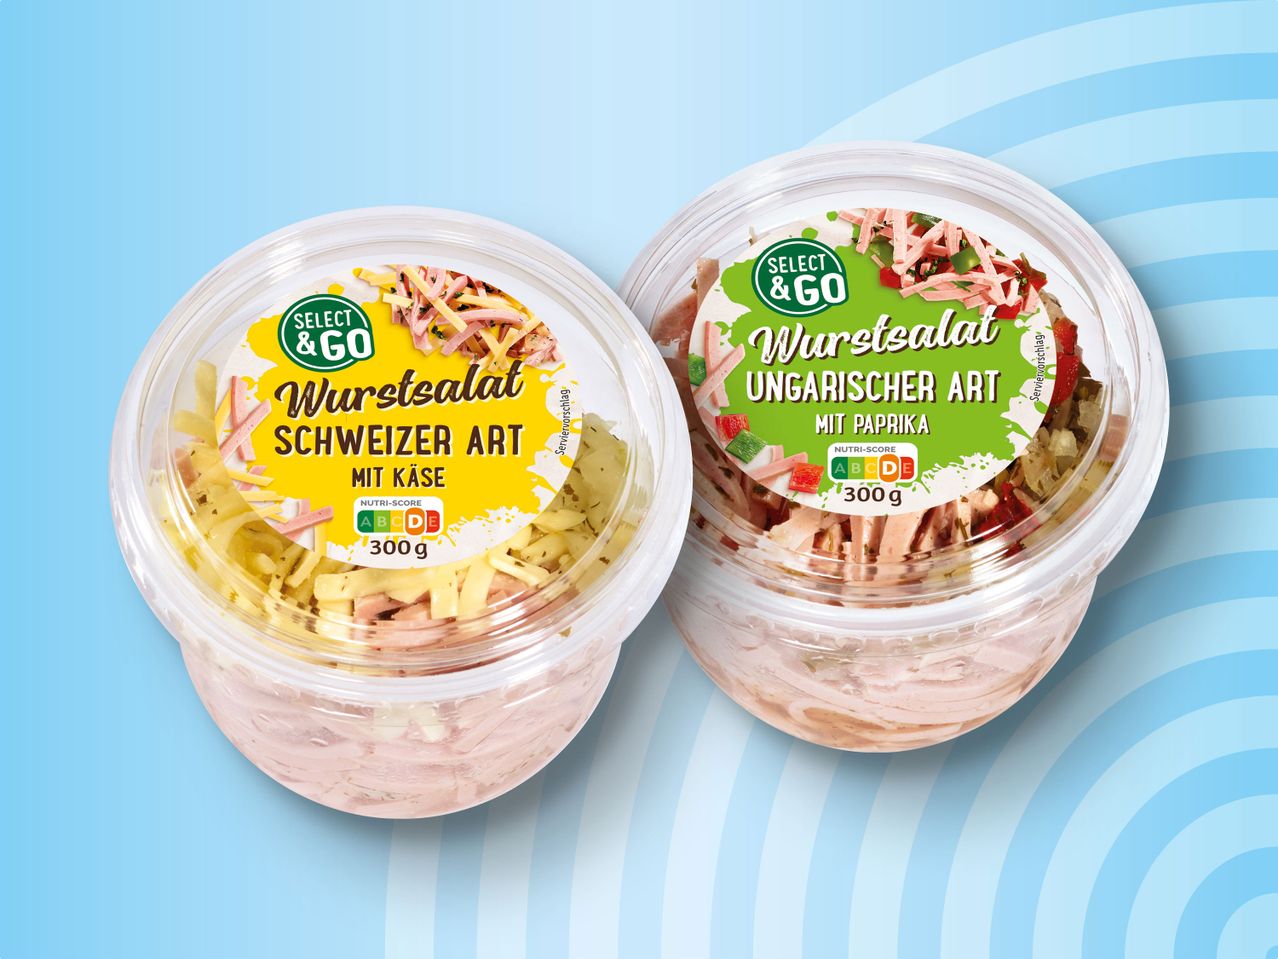 Select & Go Wurstsalat im Becher | 